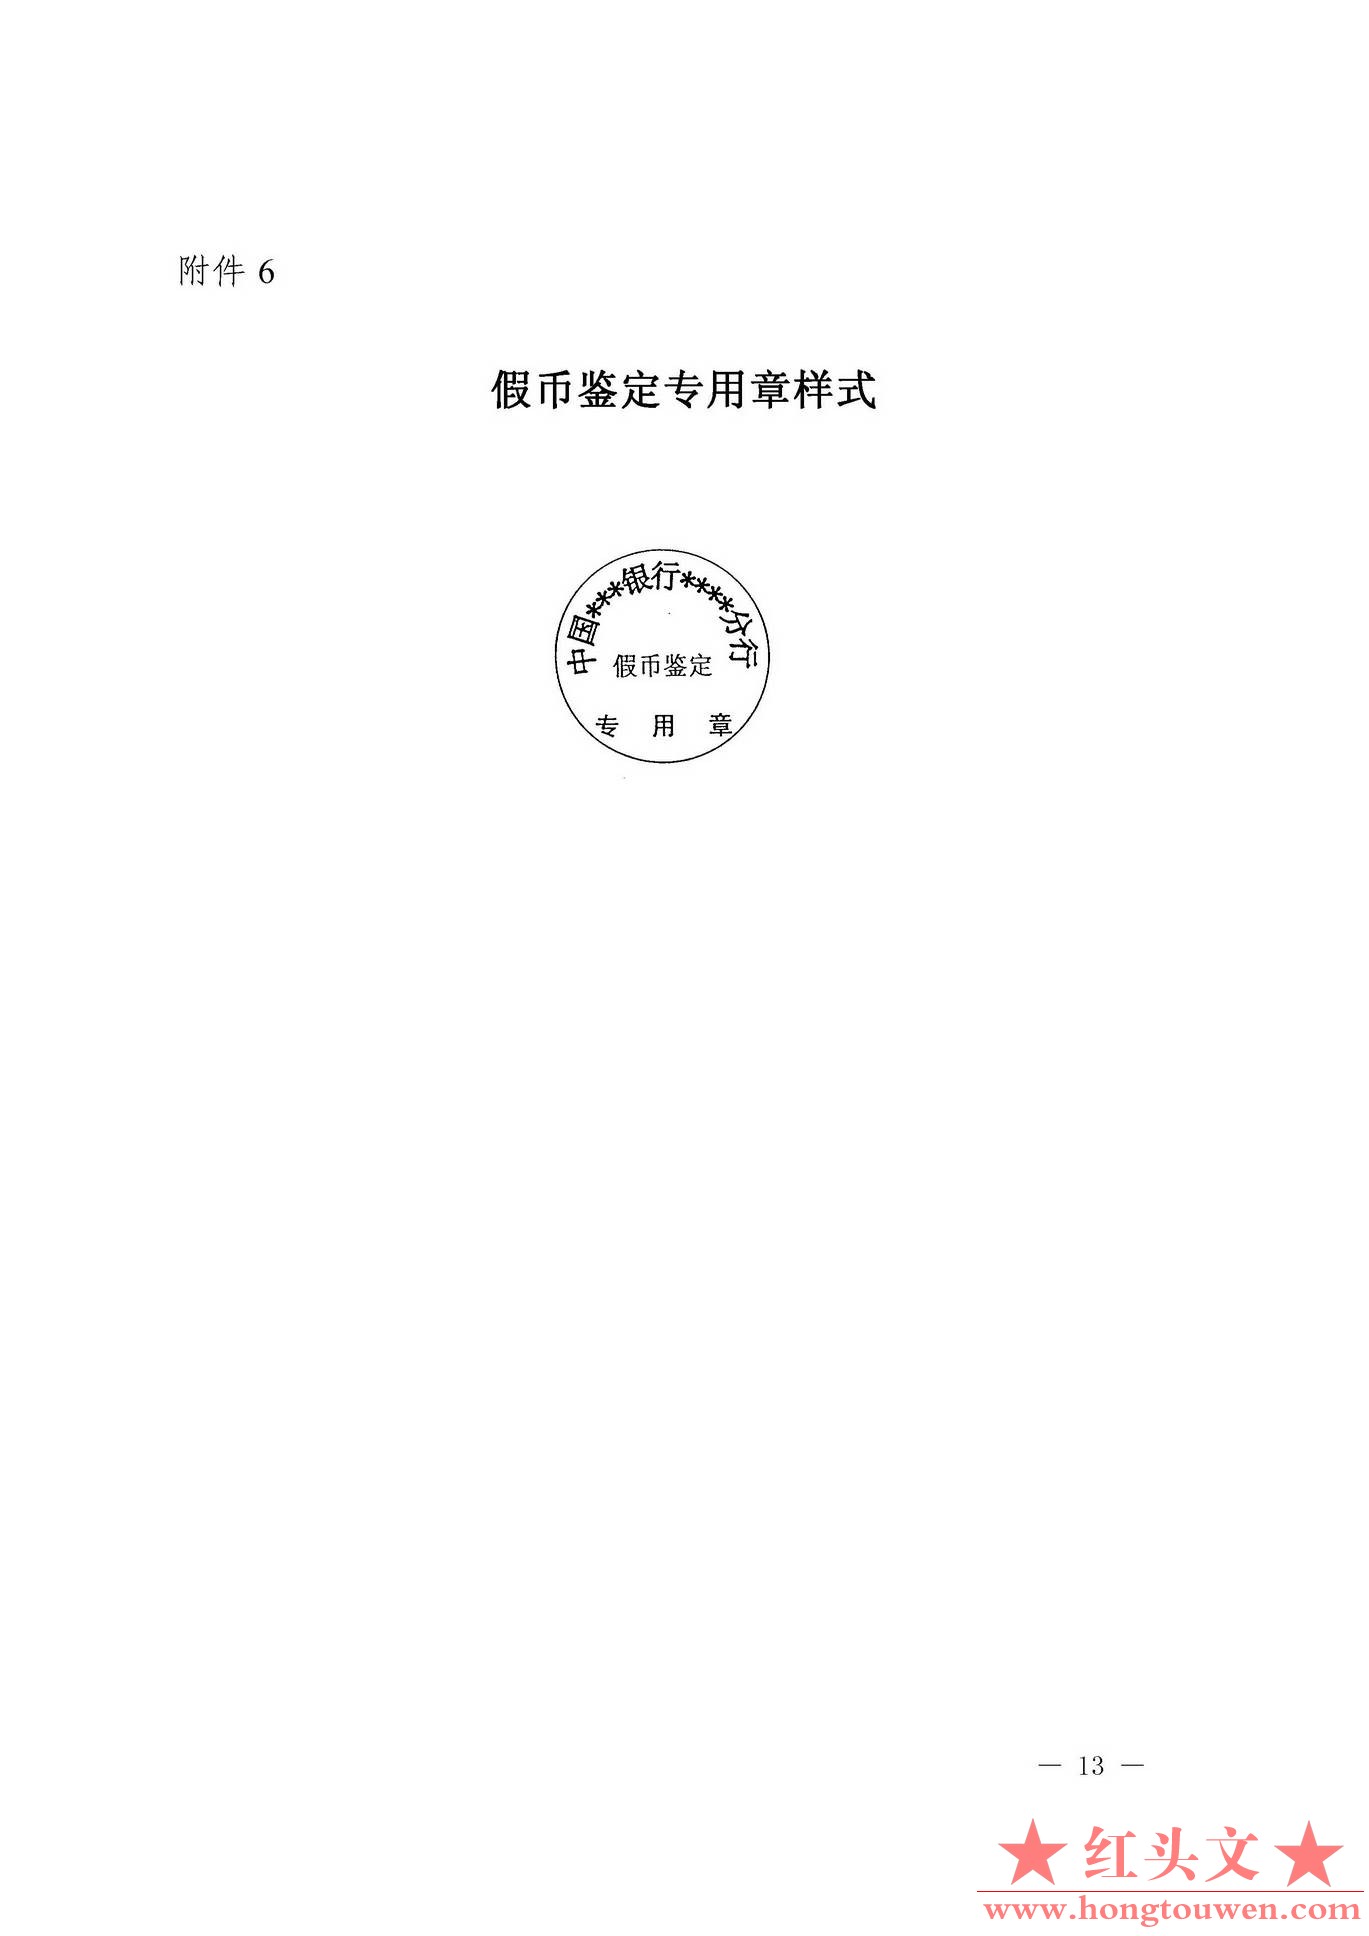 银发[2003]104号-中国人民银行关于印发收缴、鉴定假币专用凭证印章样式及使用说明的通.jpg